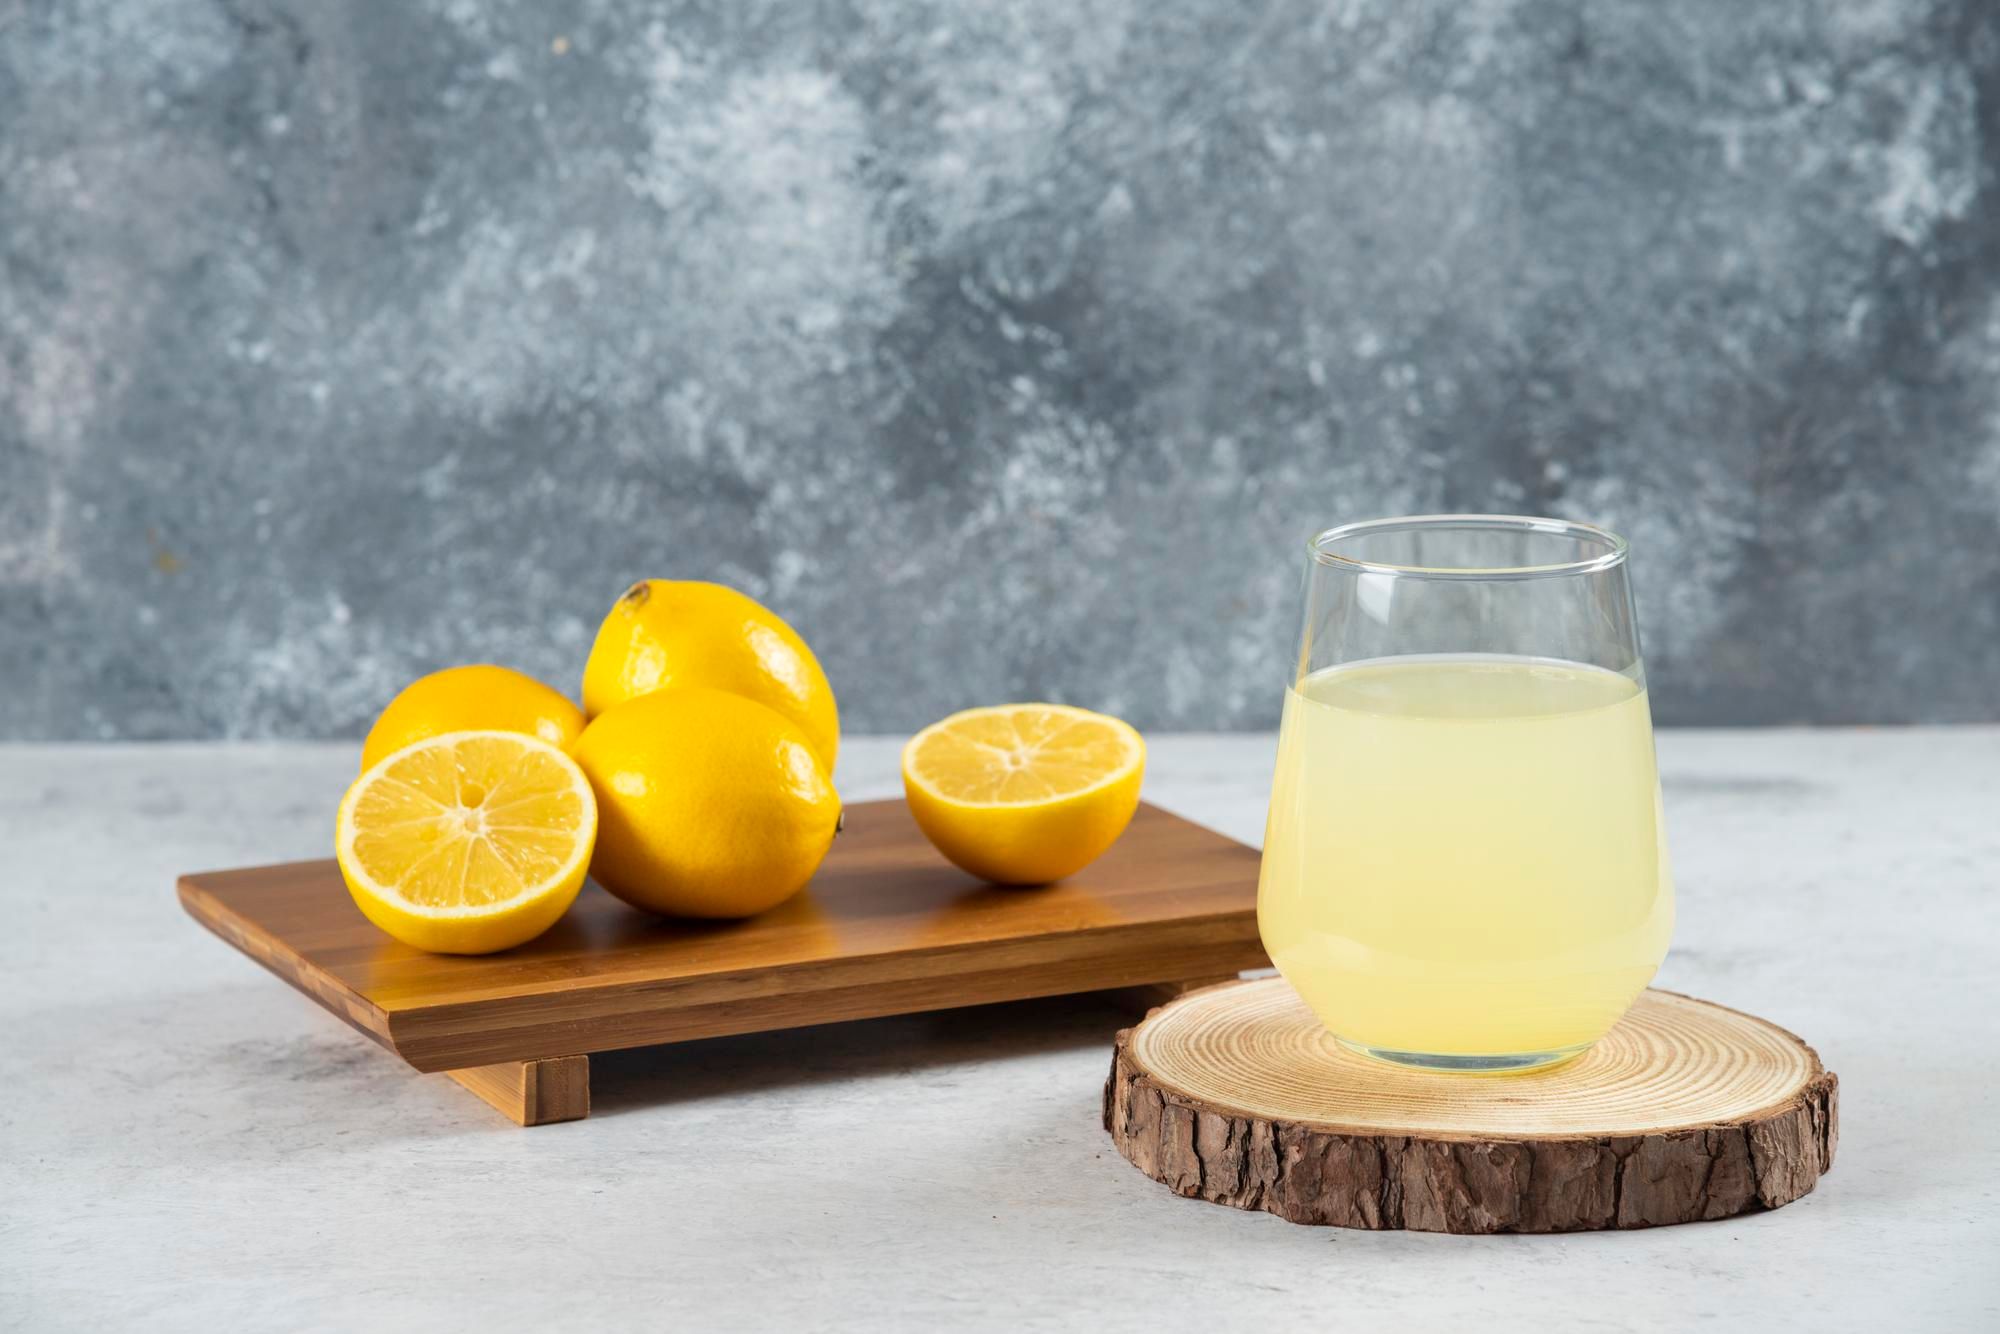 Minum Air Lemon Hangat Sebelum Tidur, Rasakan Manfaatnya Ketika Bangun Pagi! Hal Tak Terduga Bakal Terjadi 